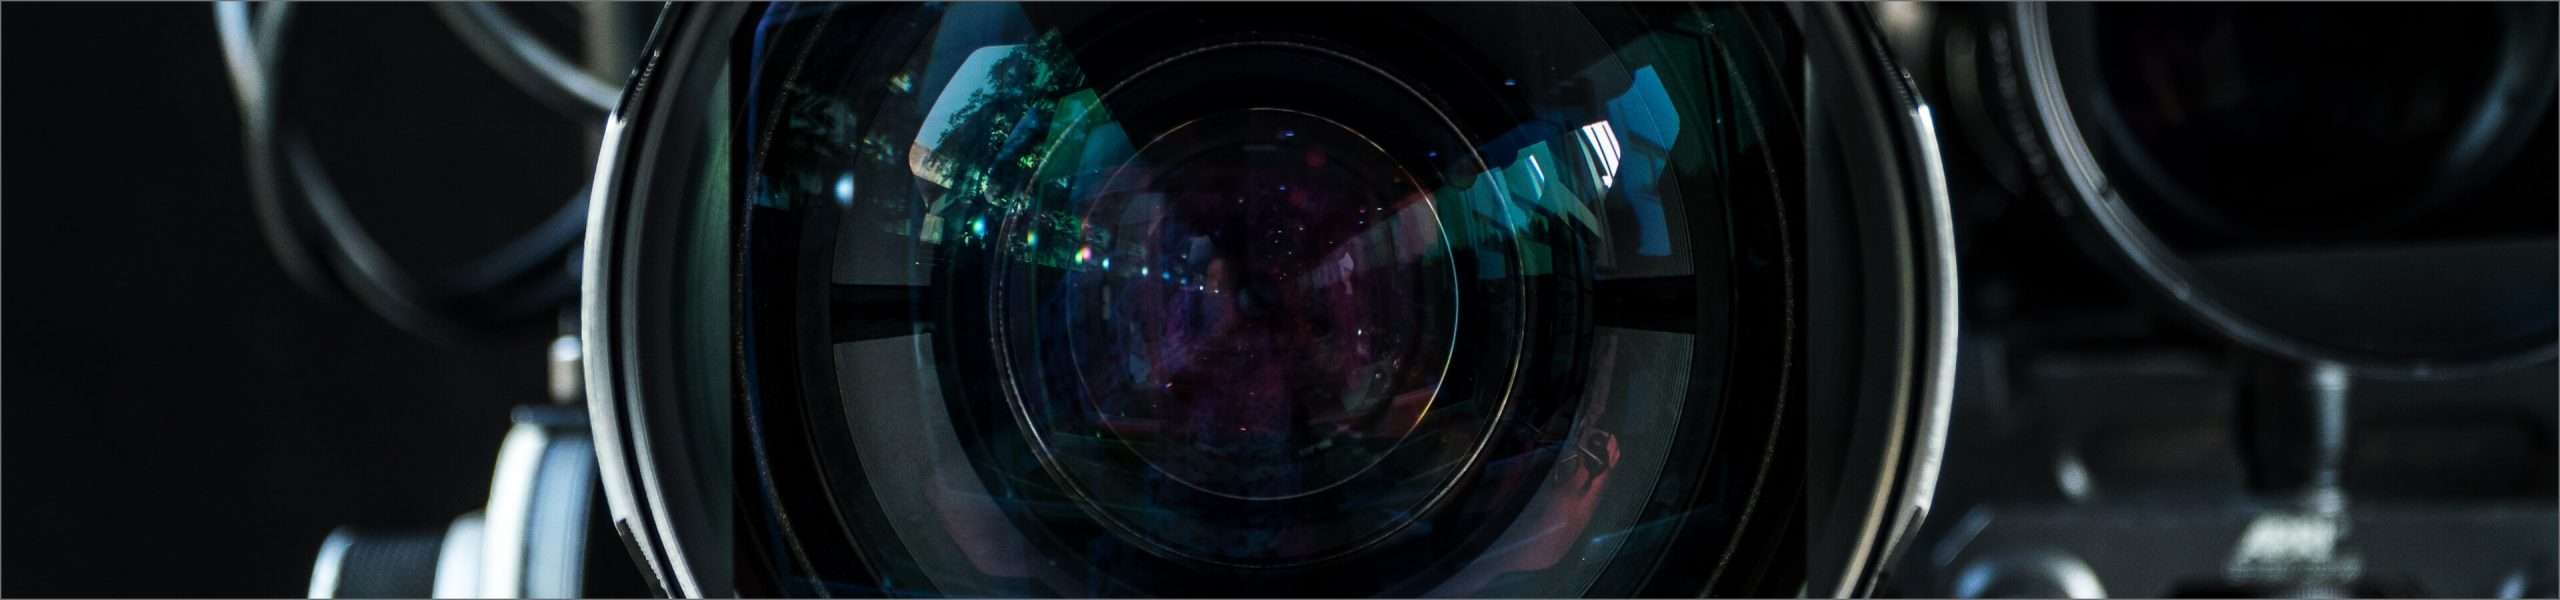 A closeup image of a camera lens